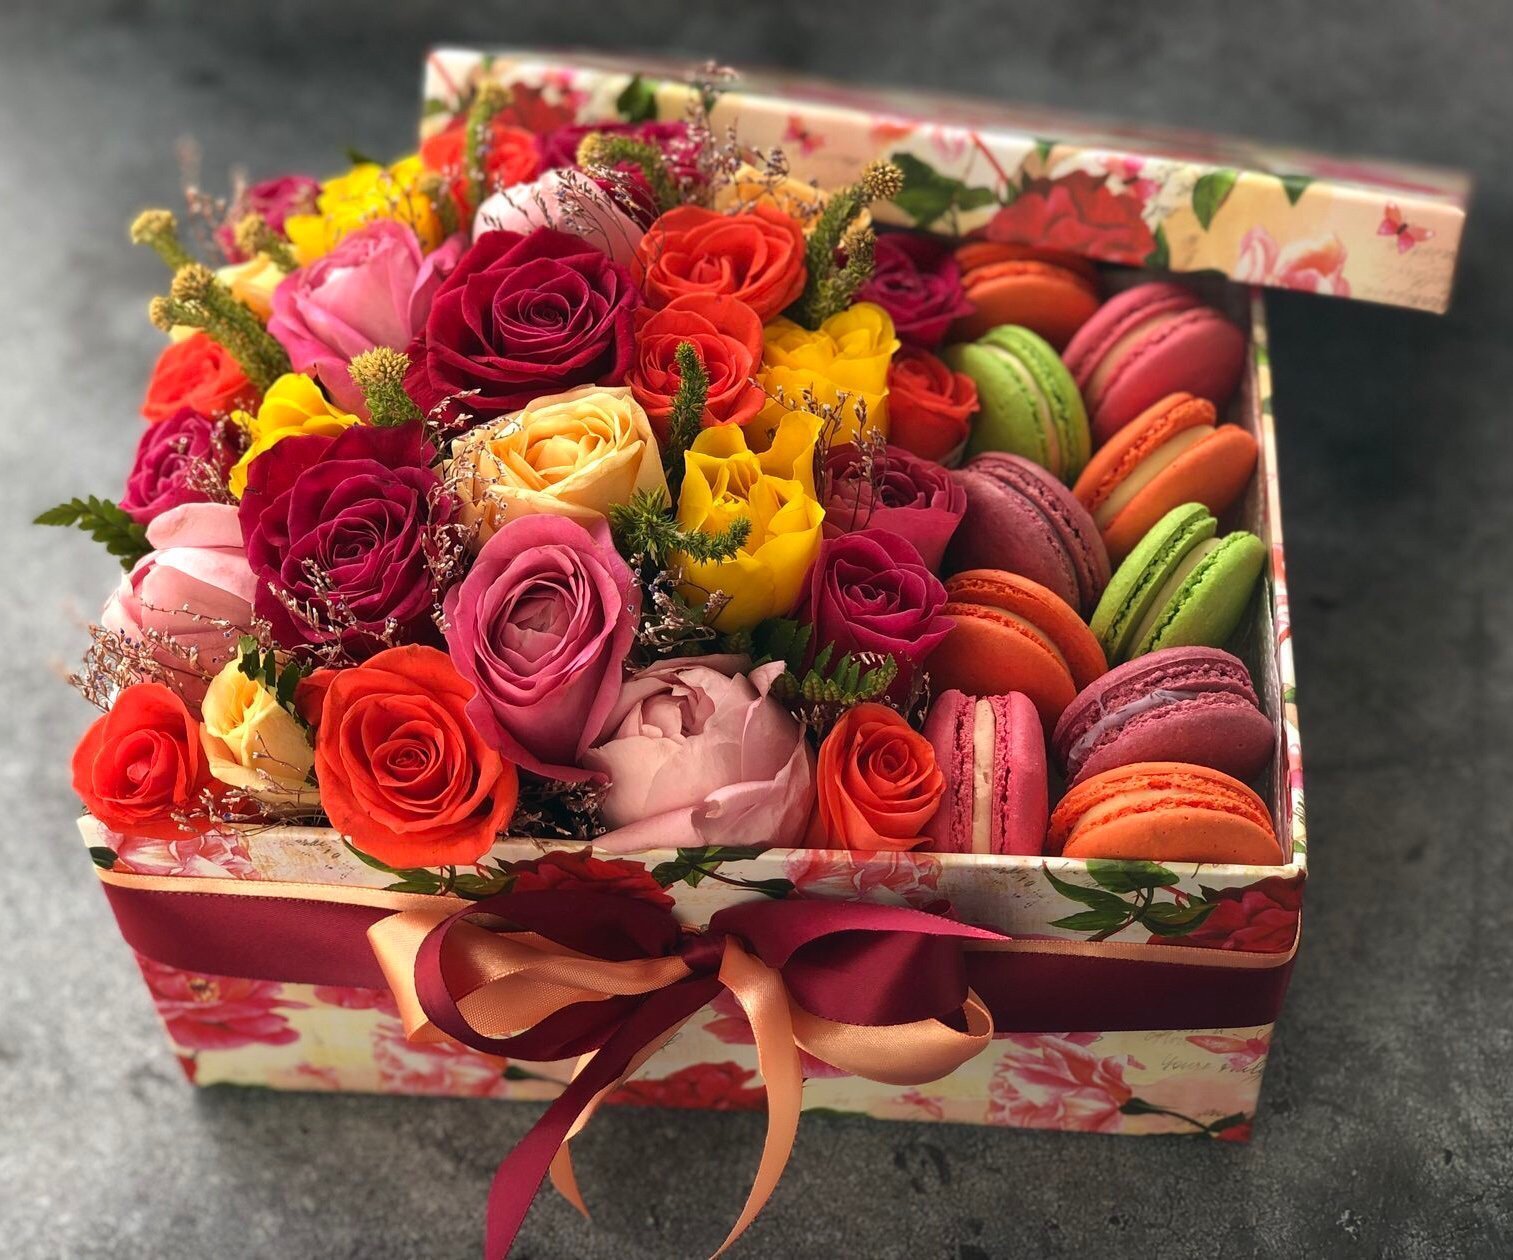 Подарочный букет на день рождения. Цветы с конфетами. Красивый букет в подарок. Букет в коробке со сладостями. Коробка с цветами и конфетами.